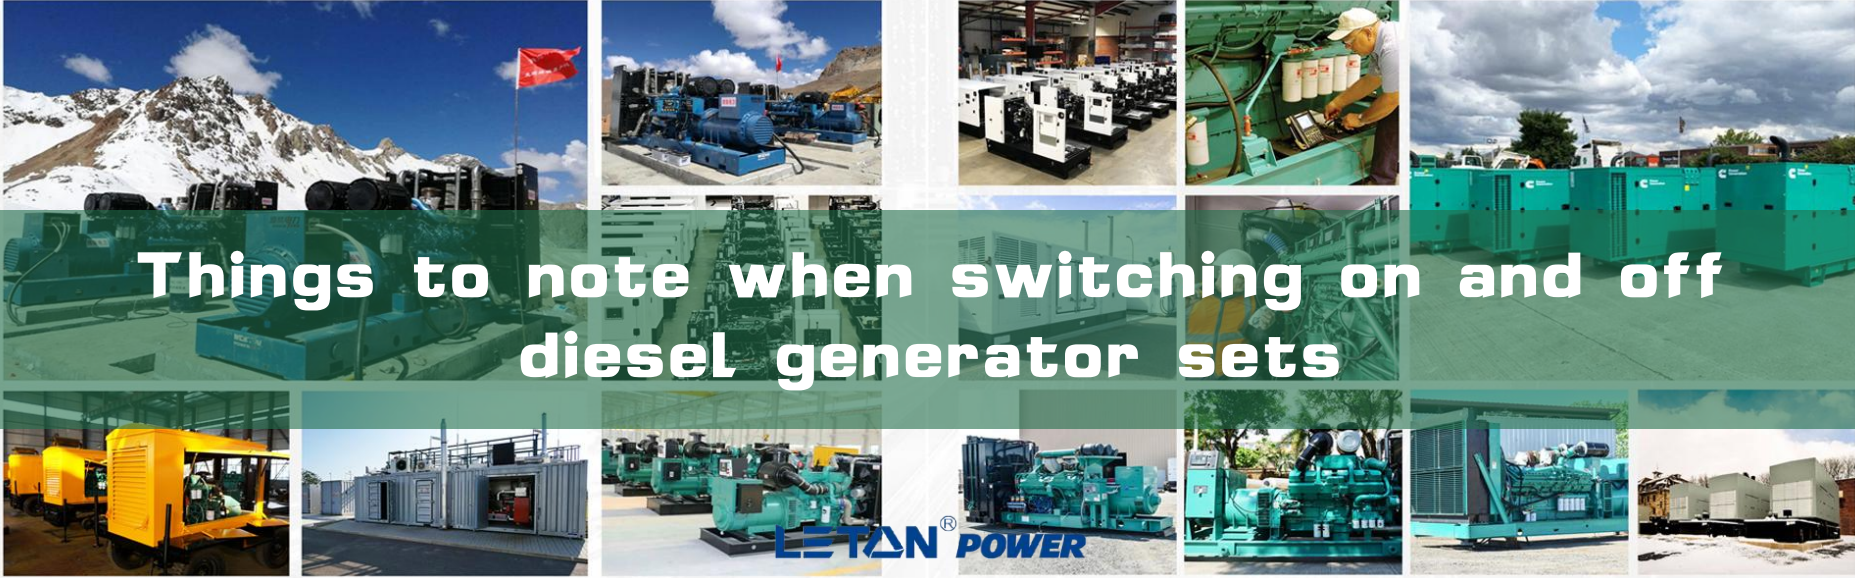 Неща, които трябва да имате предвид при включване и изключване на дизел генератори